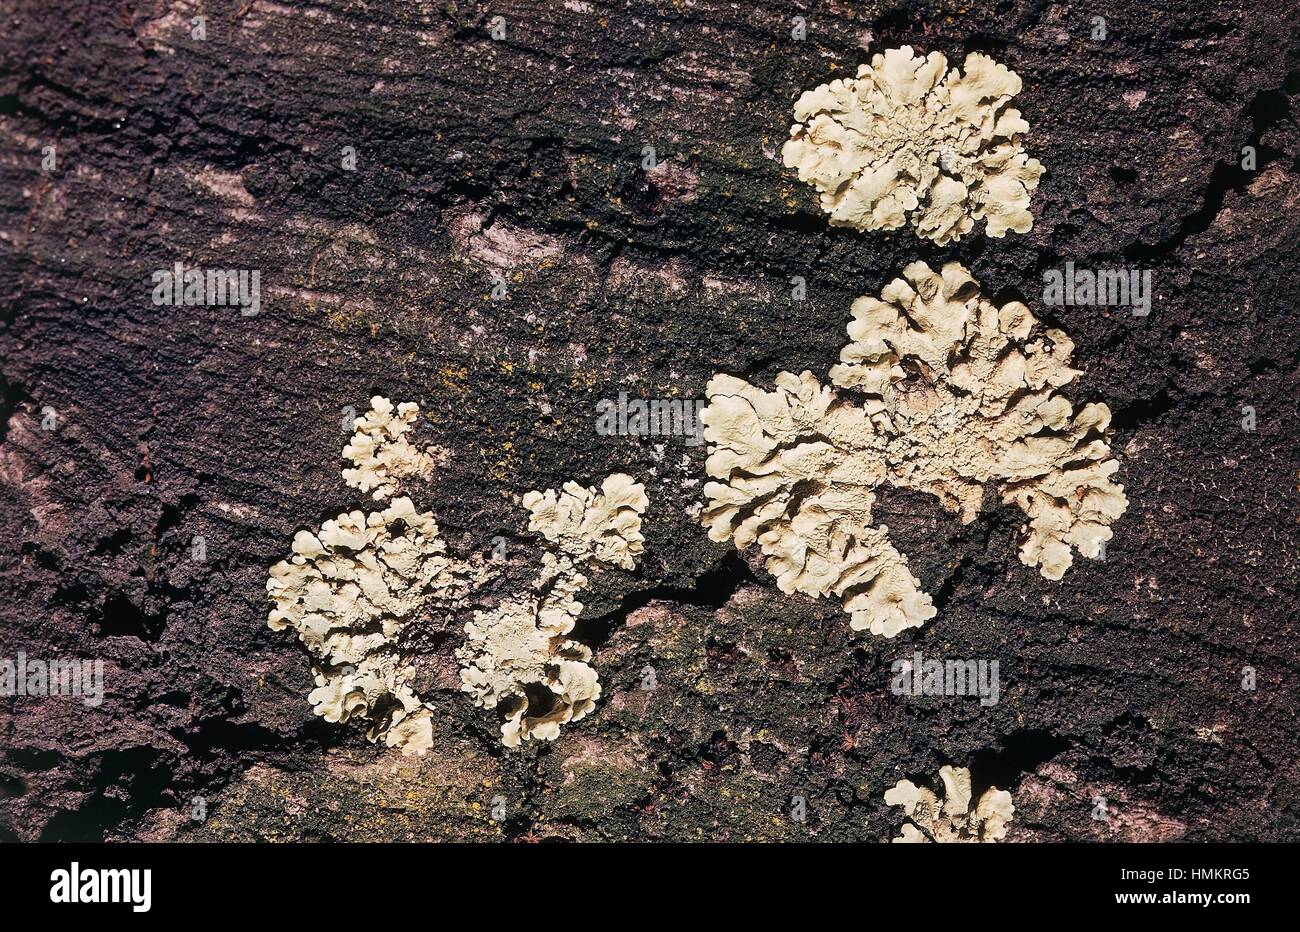 Common Greenshield Lichen (Flavoparmelia caperata), Parmeliaceae. Stock Photo